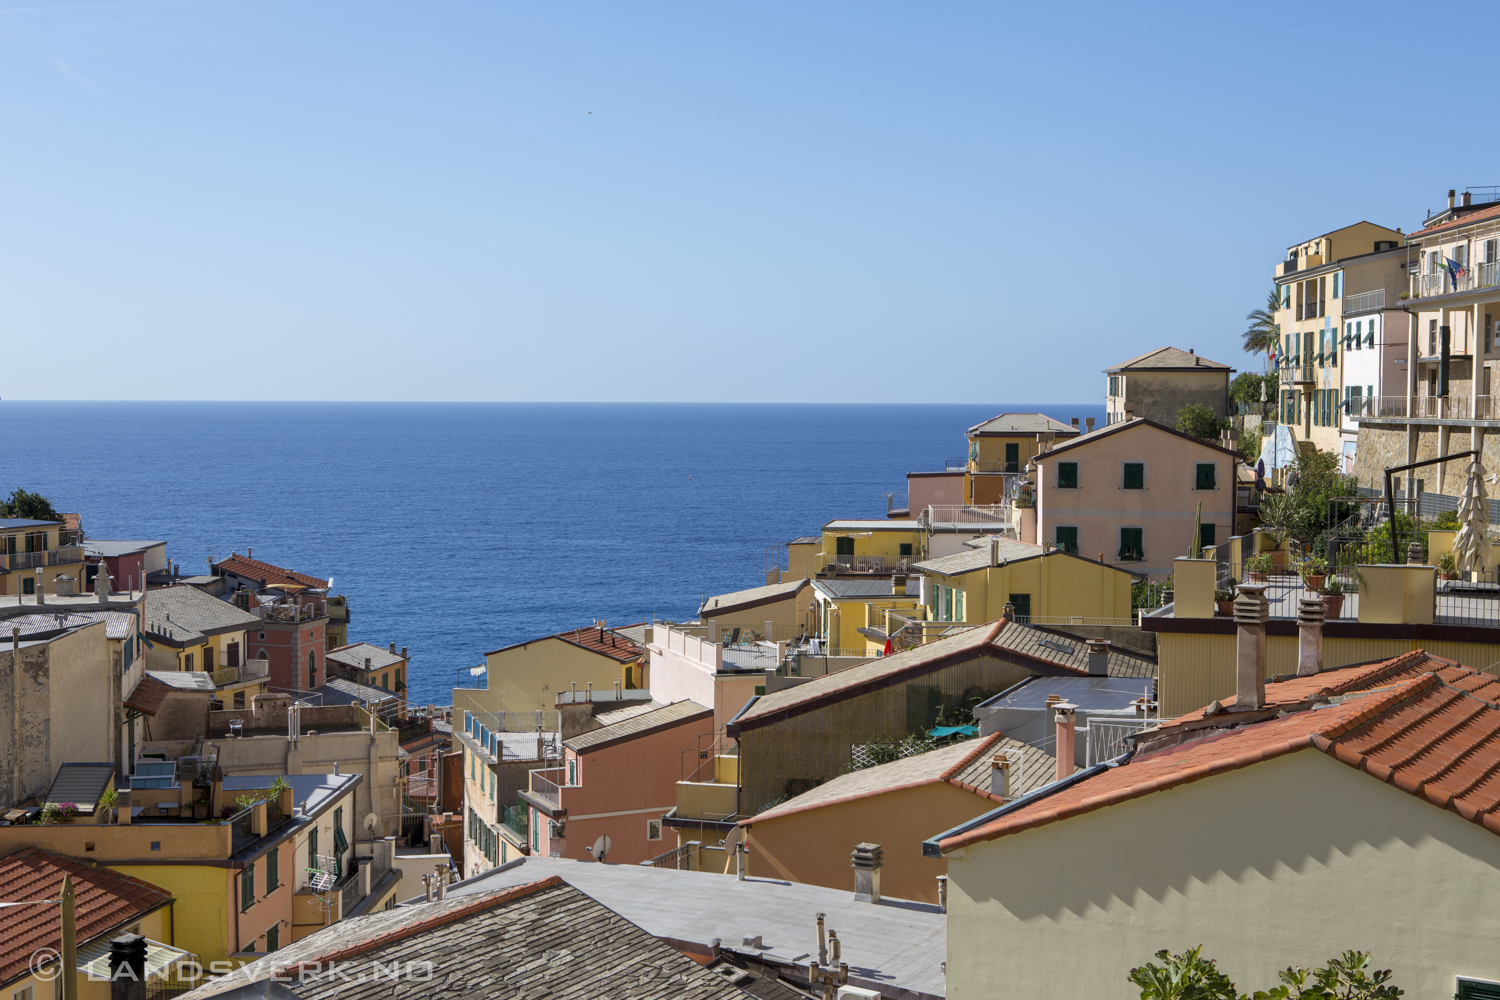 Riomaggiore, Italy. 

(Canon EOS 5D Mark III / Canon EF 24-70mm f/2.8 L USM)